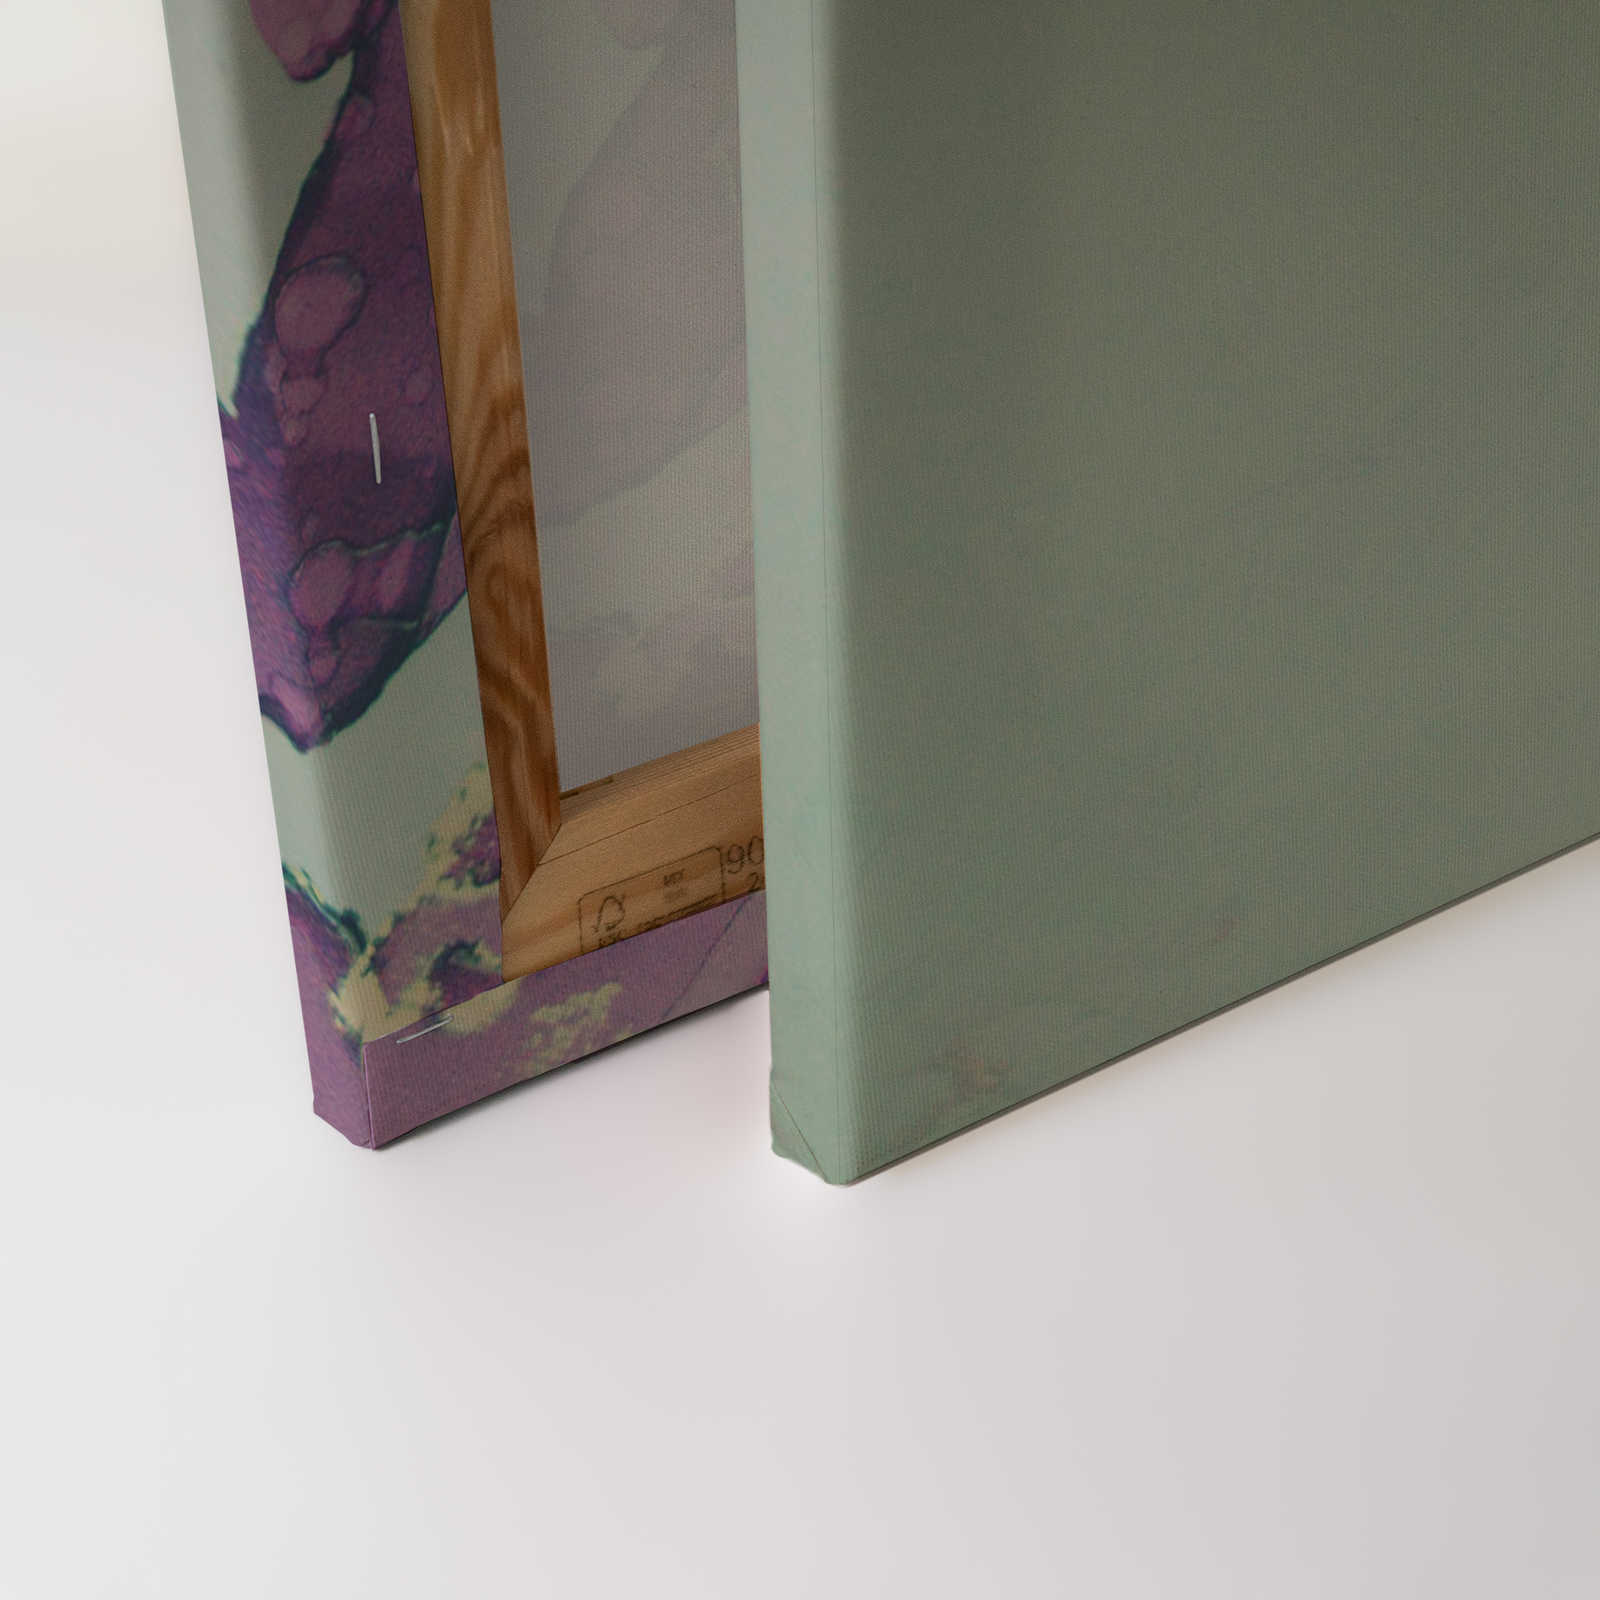             Lienzo de diseño acrílico Rostro de mujer en turquesa y morado - 1,20 m x 0,80 m
        